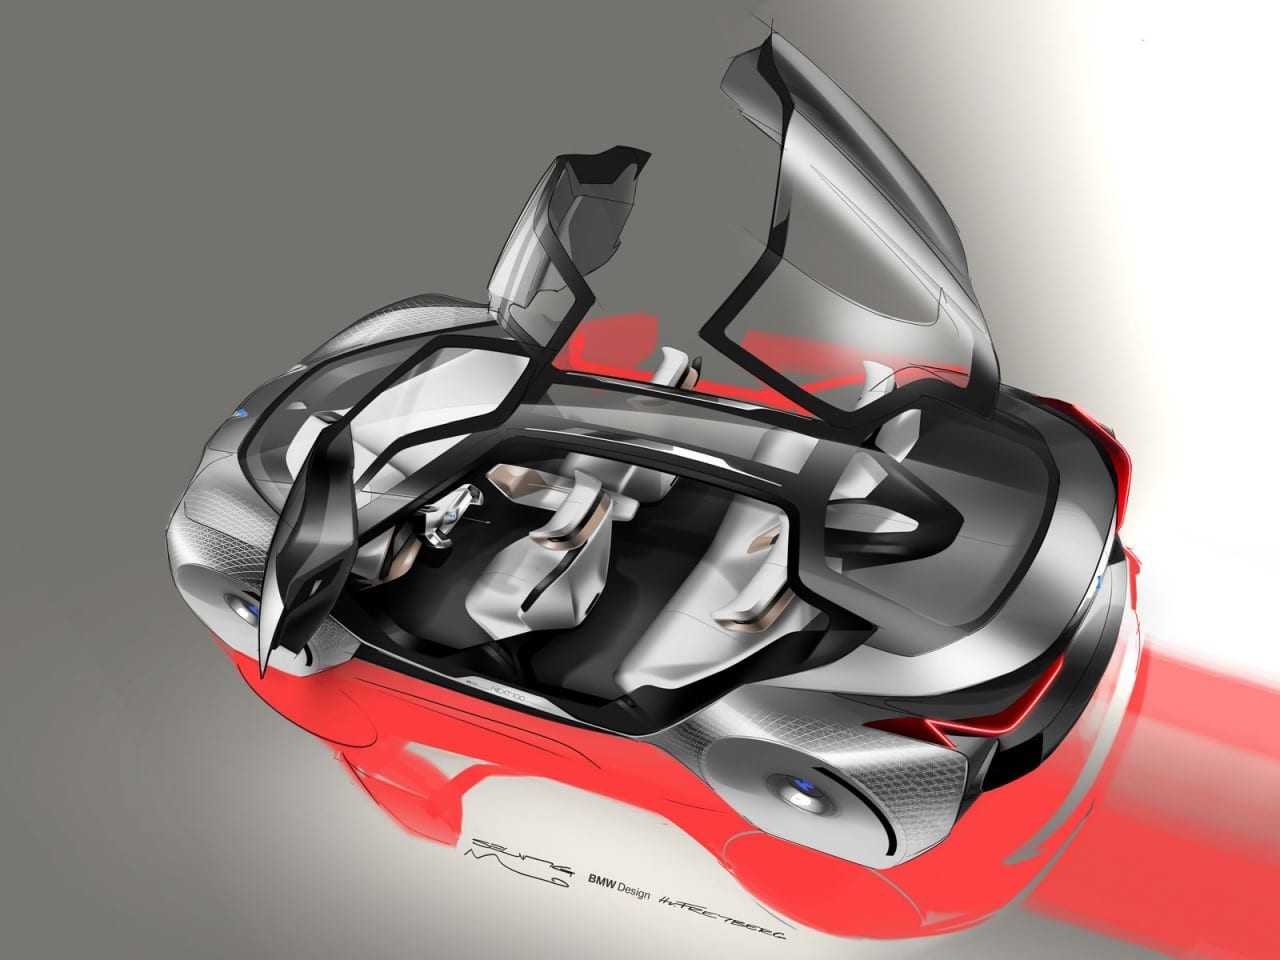 01-BMW-Vision-Next-100-Concept-Design-Sketch-Render-06